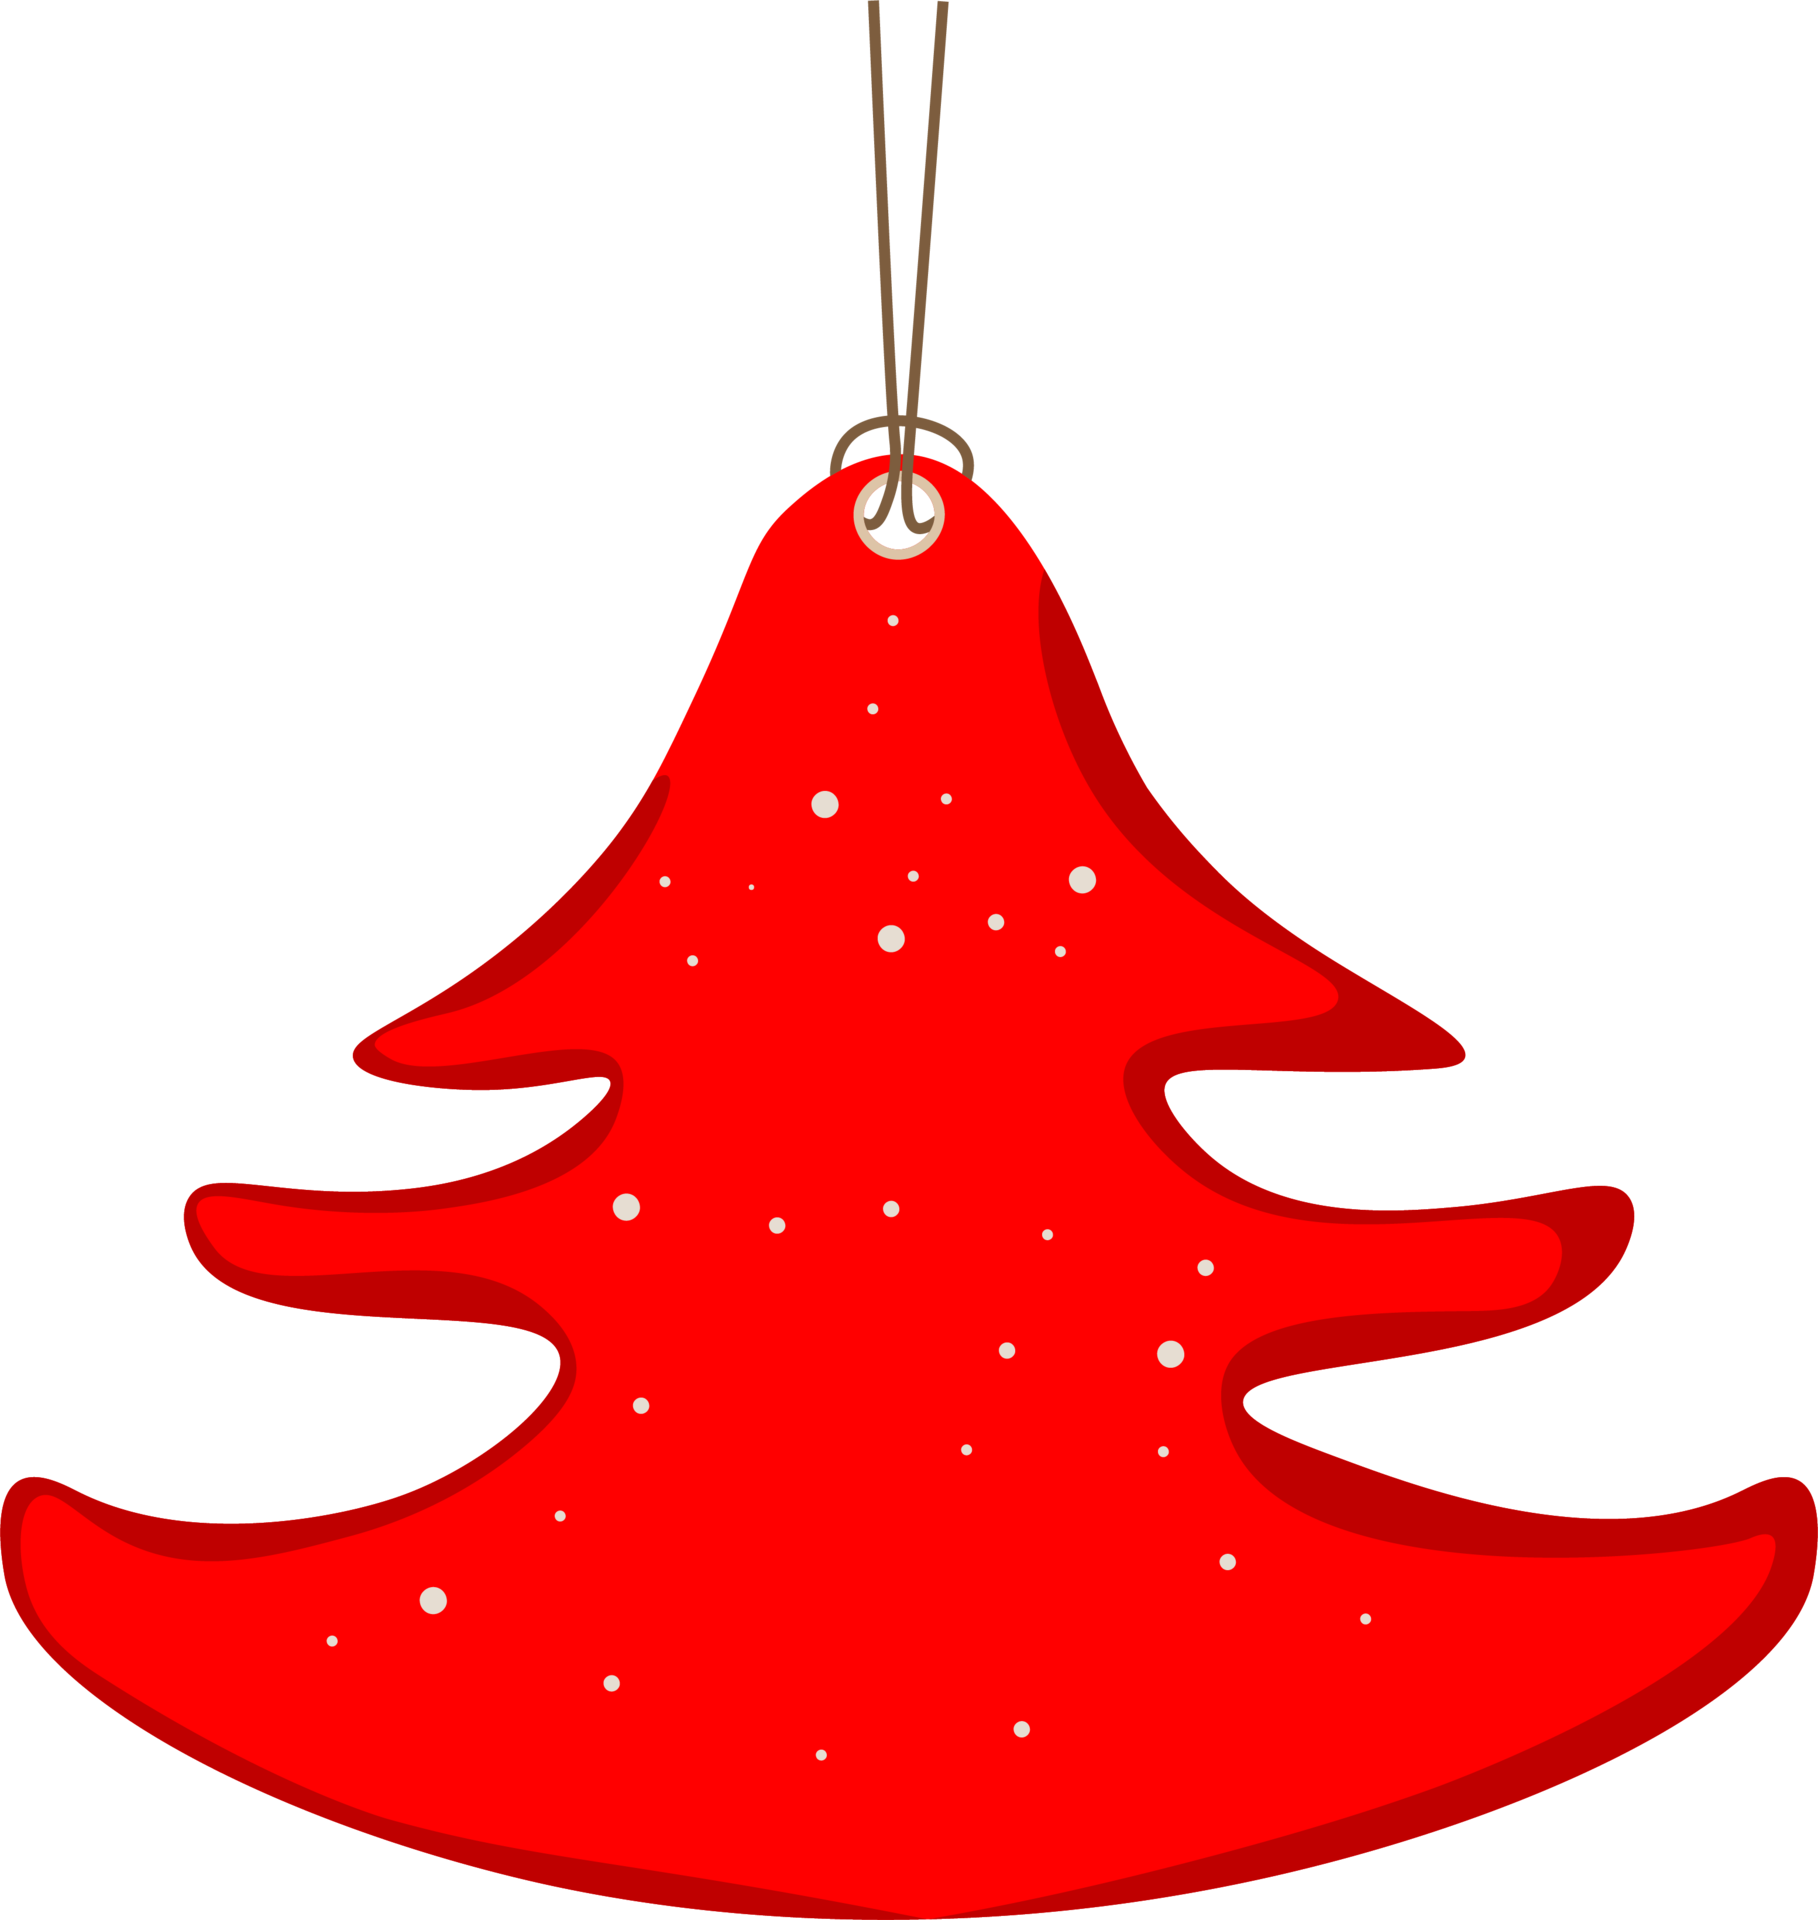 Nhãn đỏ trống miễn phí cho đợt giảm giá, dạng cây thông Giáng sinh: Giáng sinh đến rồi, hãy đến với cửa hàng của chúng tôi để trải nghiệm không khí lễ hội và nhận được nhãn đỏ trống miễn phí dạng cây thông Giáng sinh. Đây là cơ hội để bạn sở hữu sản phẩm mà không cần trả thêm bất kỳ chi phí nào. Hãy cùng đón Giáng sinh và tận hưởng những giây phút vui vẻ tại cửa hàng.